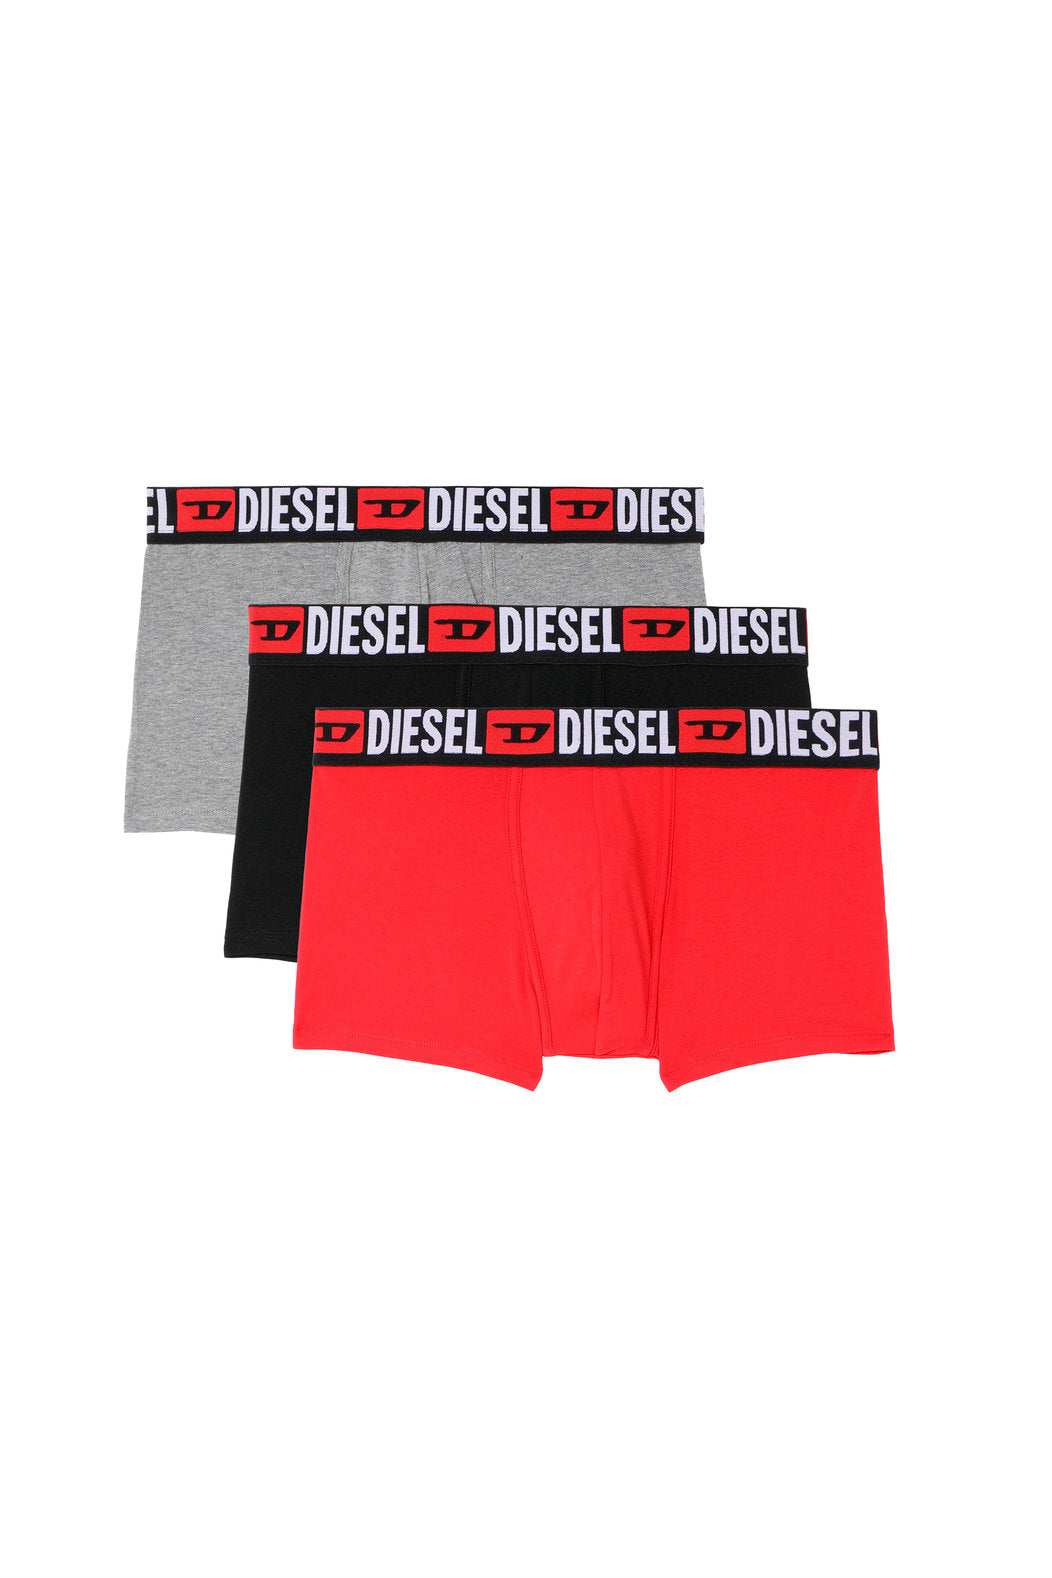 Diesel Damien Three Pack Underwear | Colours